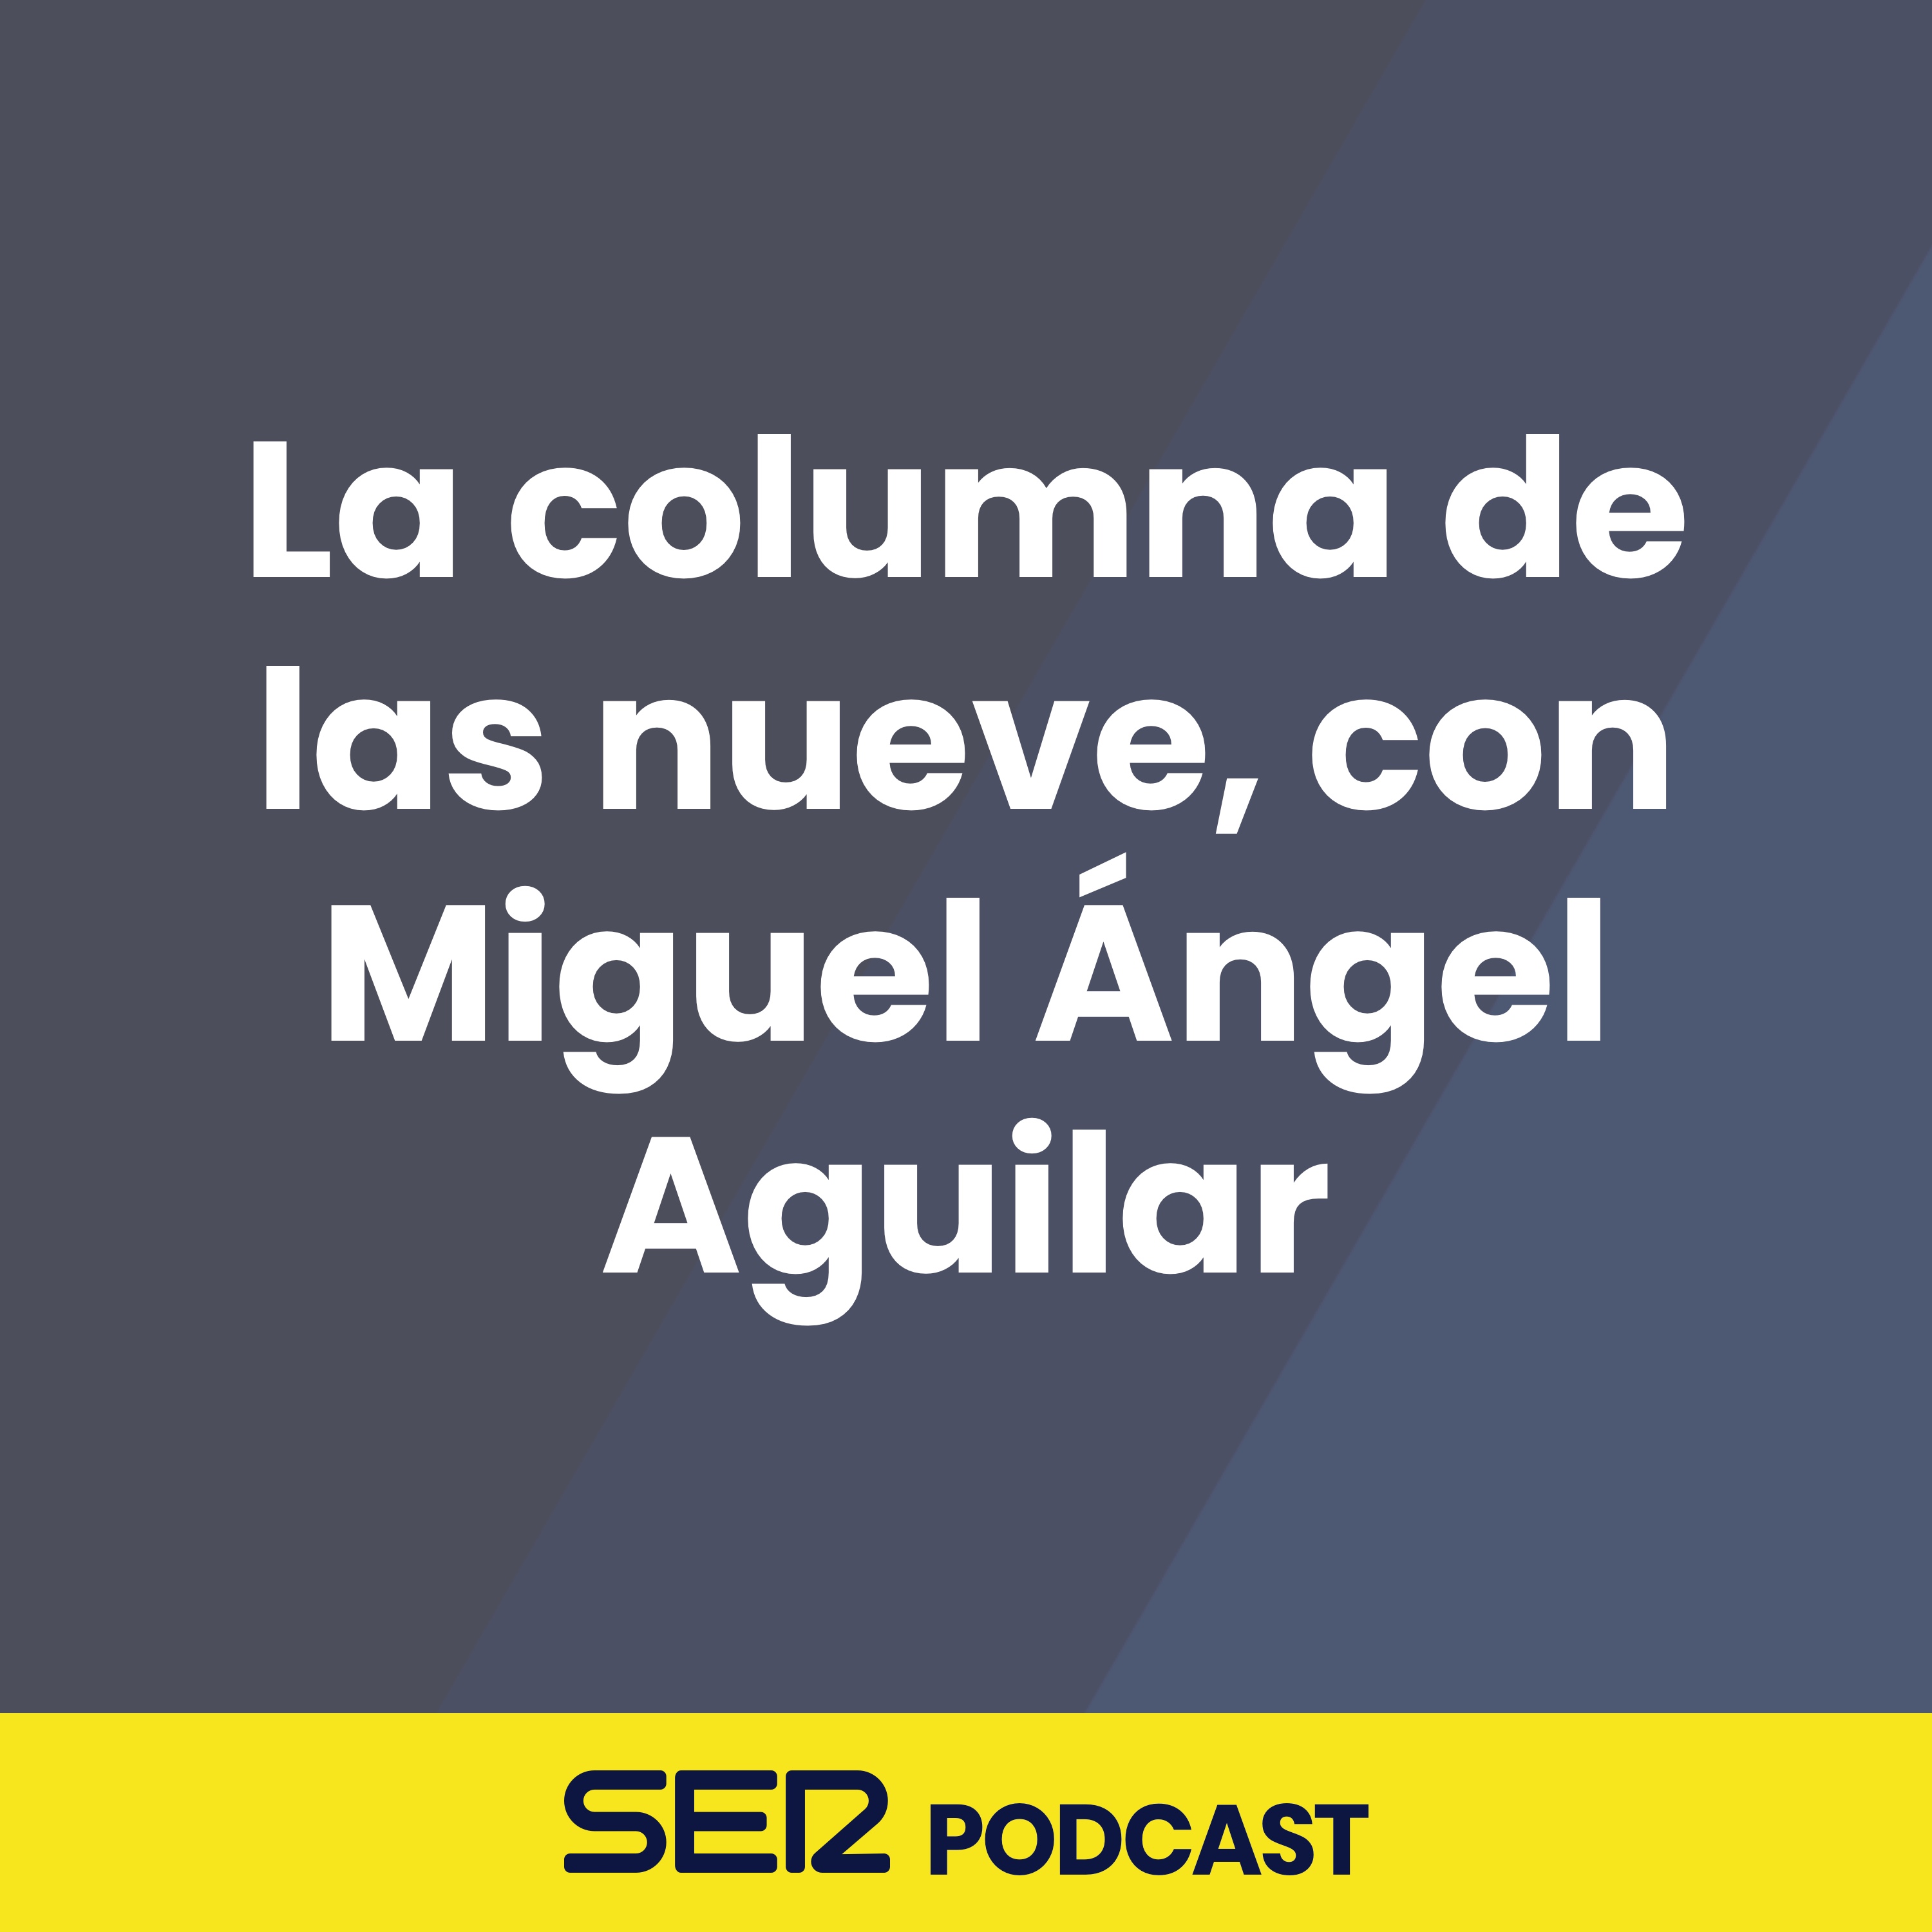 La columna de las nueve, con Miguel Ángel Aguilar